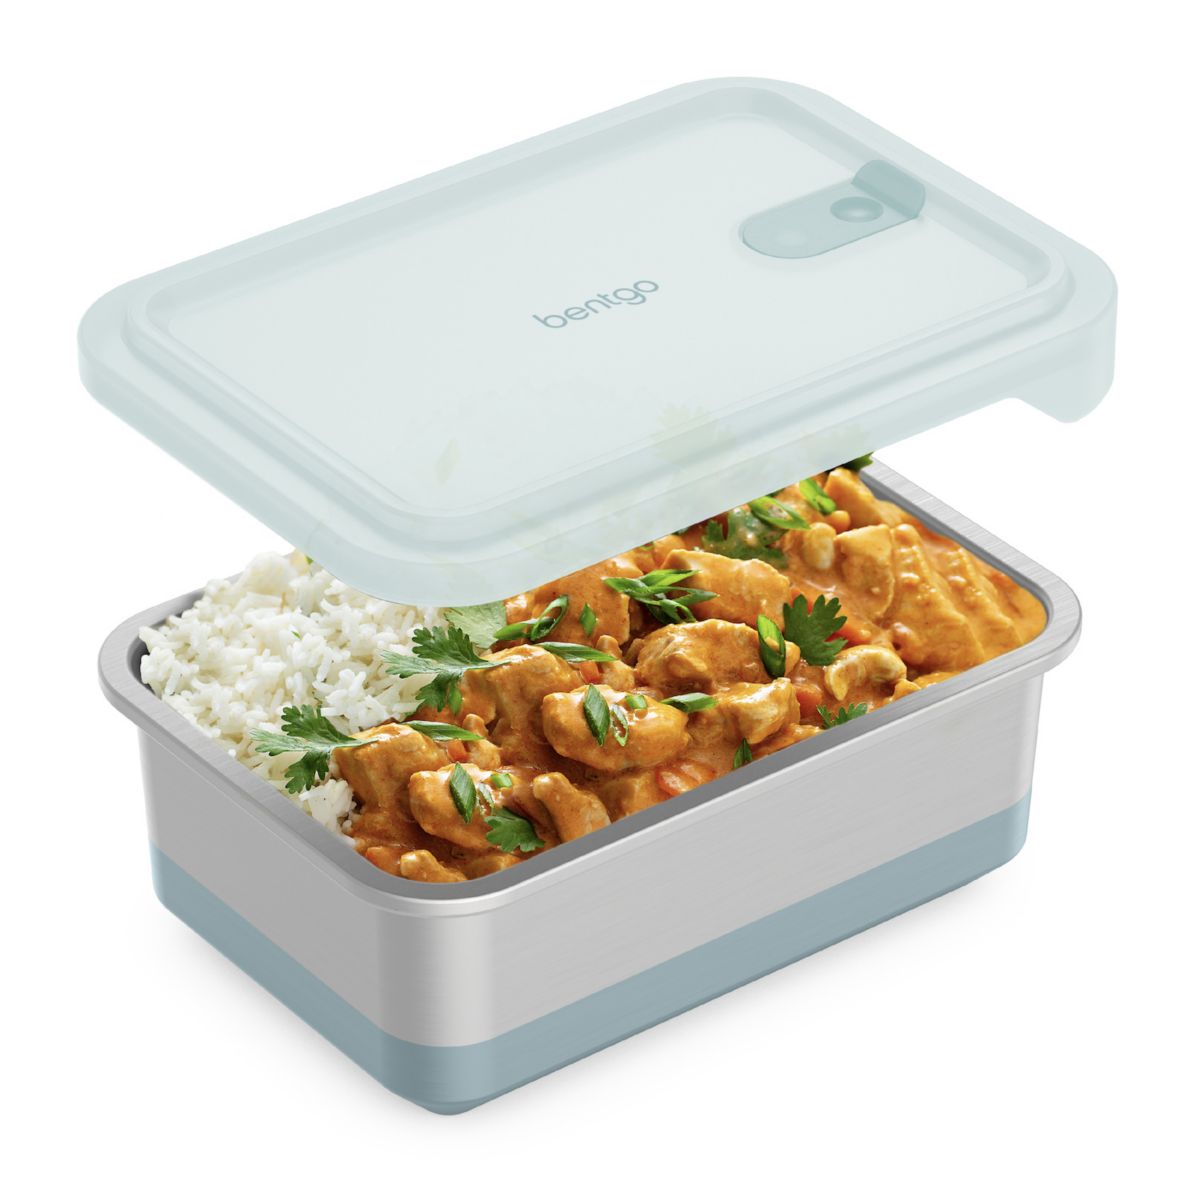 Bentgo Microsteel Heat & Eat Family-Size Food Container Bentgo